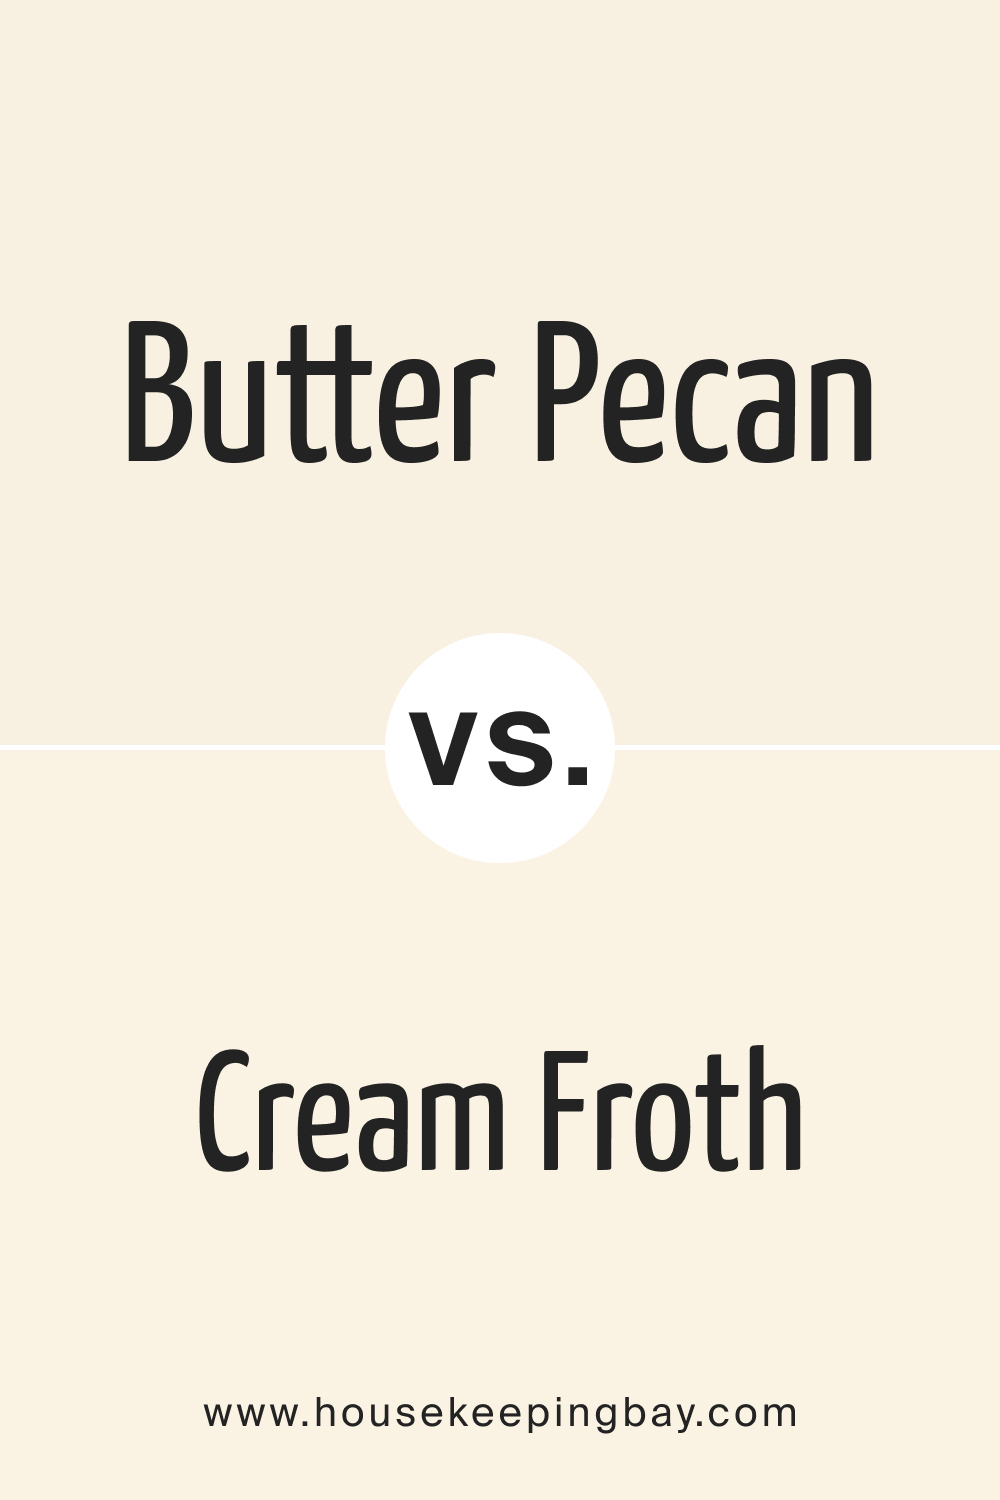 Butter Pecan OC 89 vs. OC 97 Cream Froth